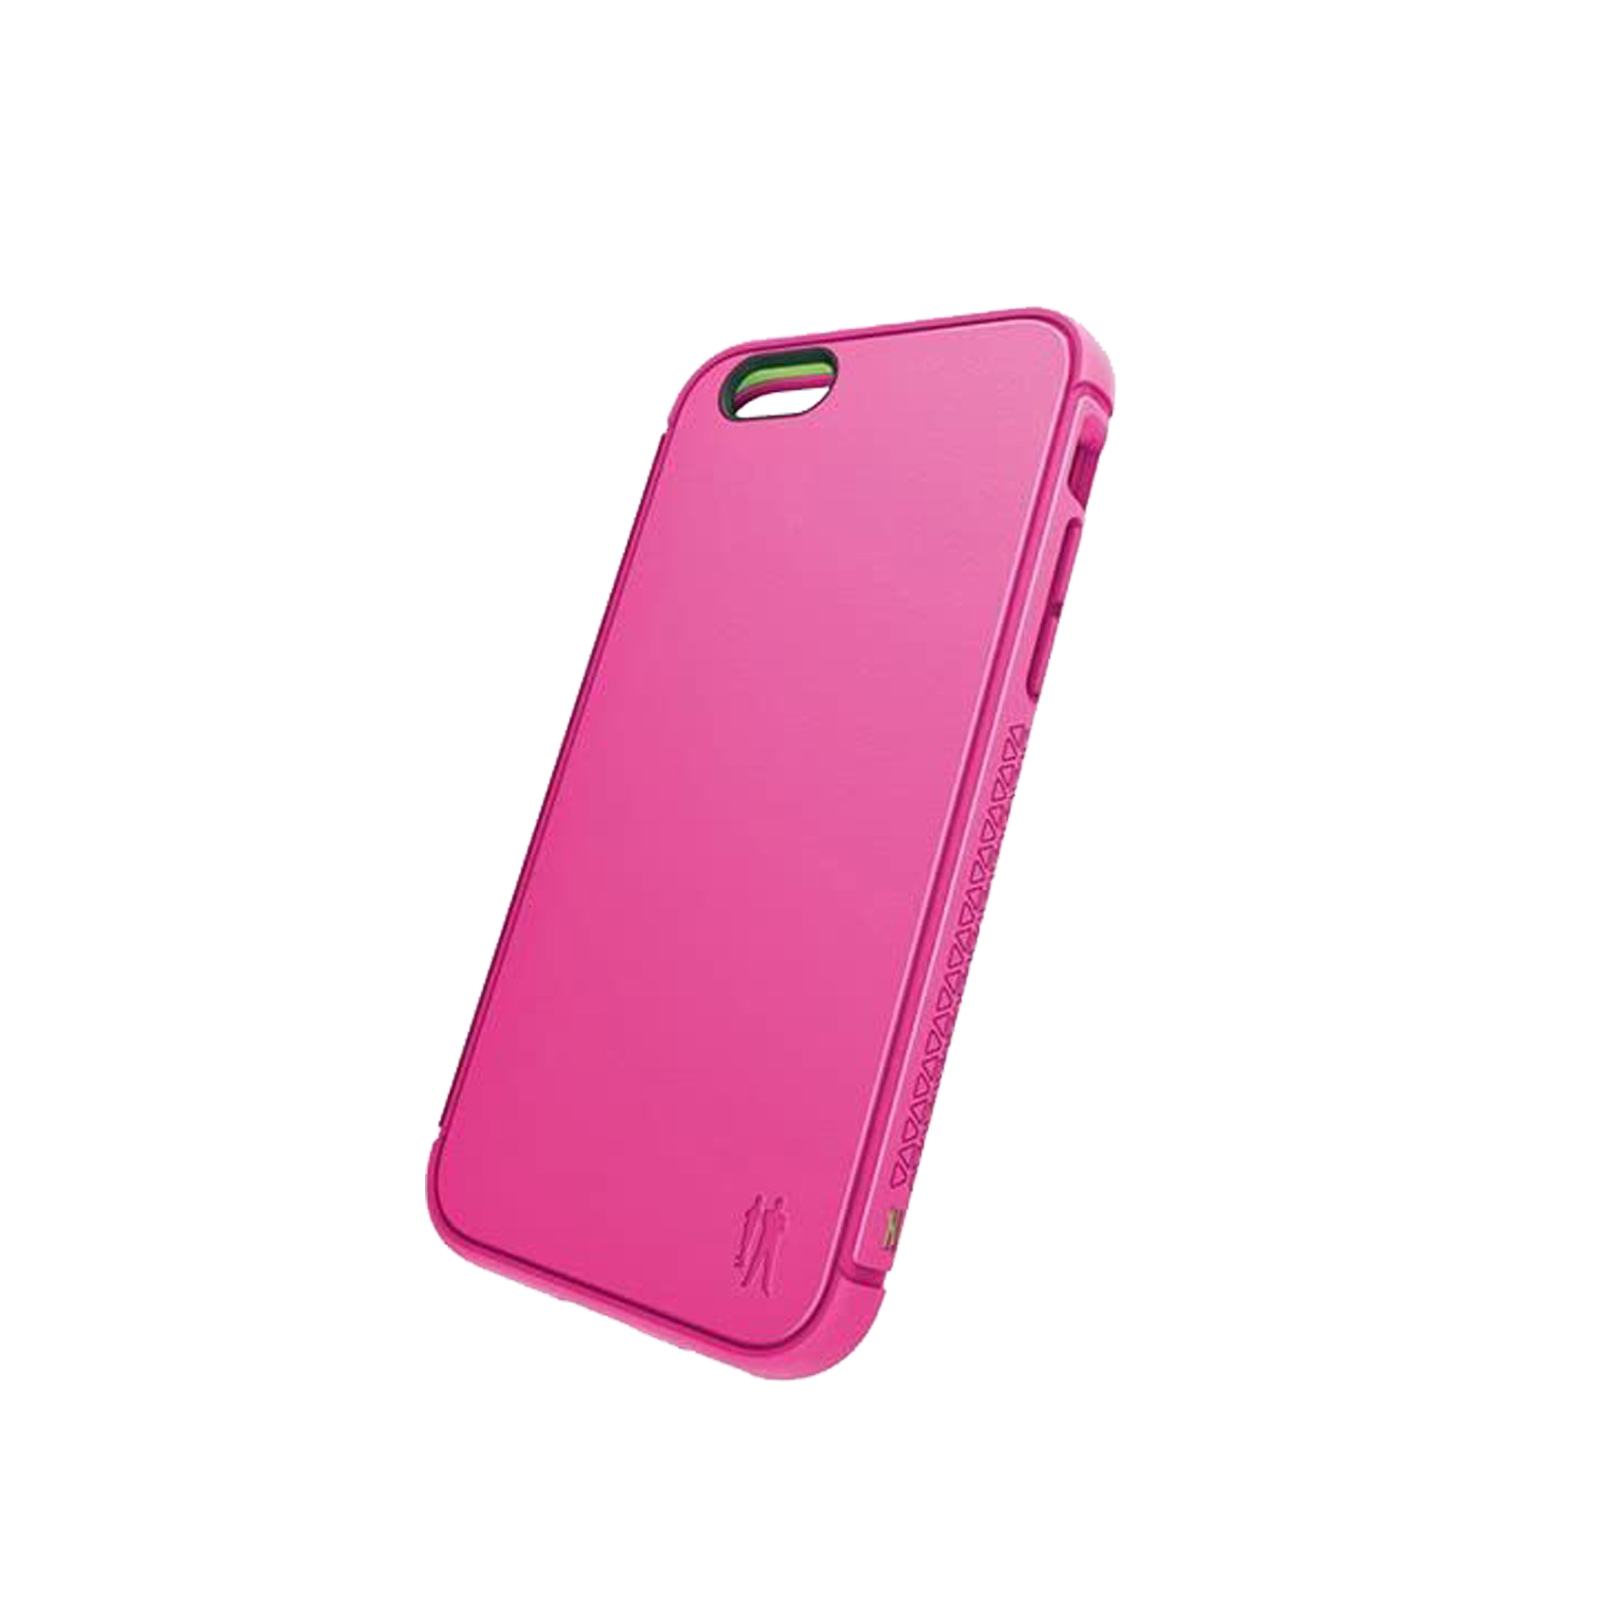 Contact iPhone 6 Plus / 7 Plus / 8 Plus Case [Pink]